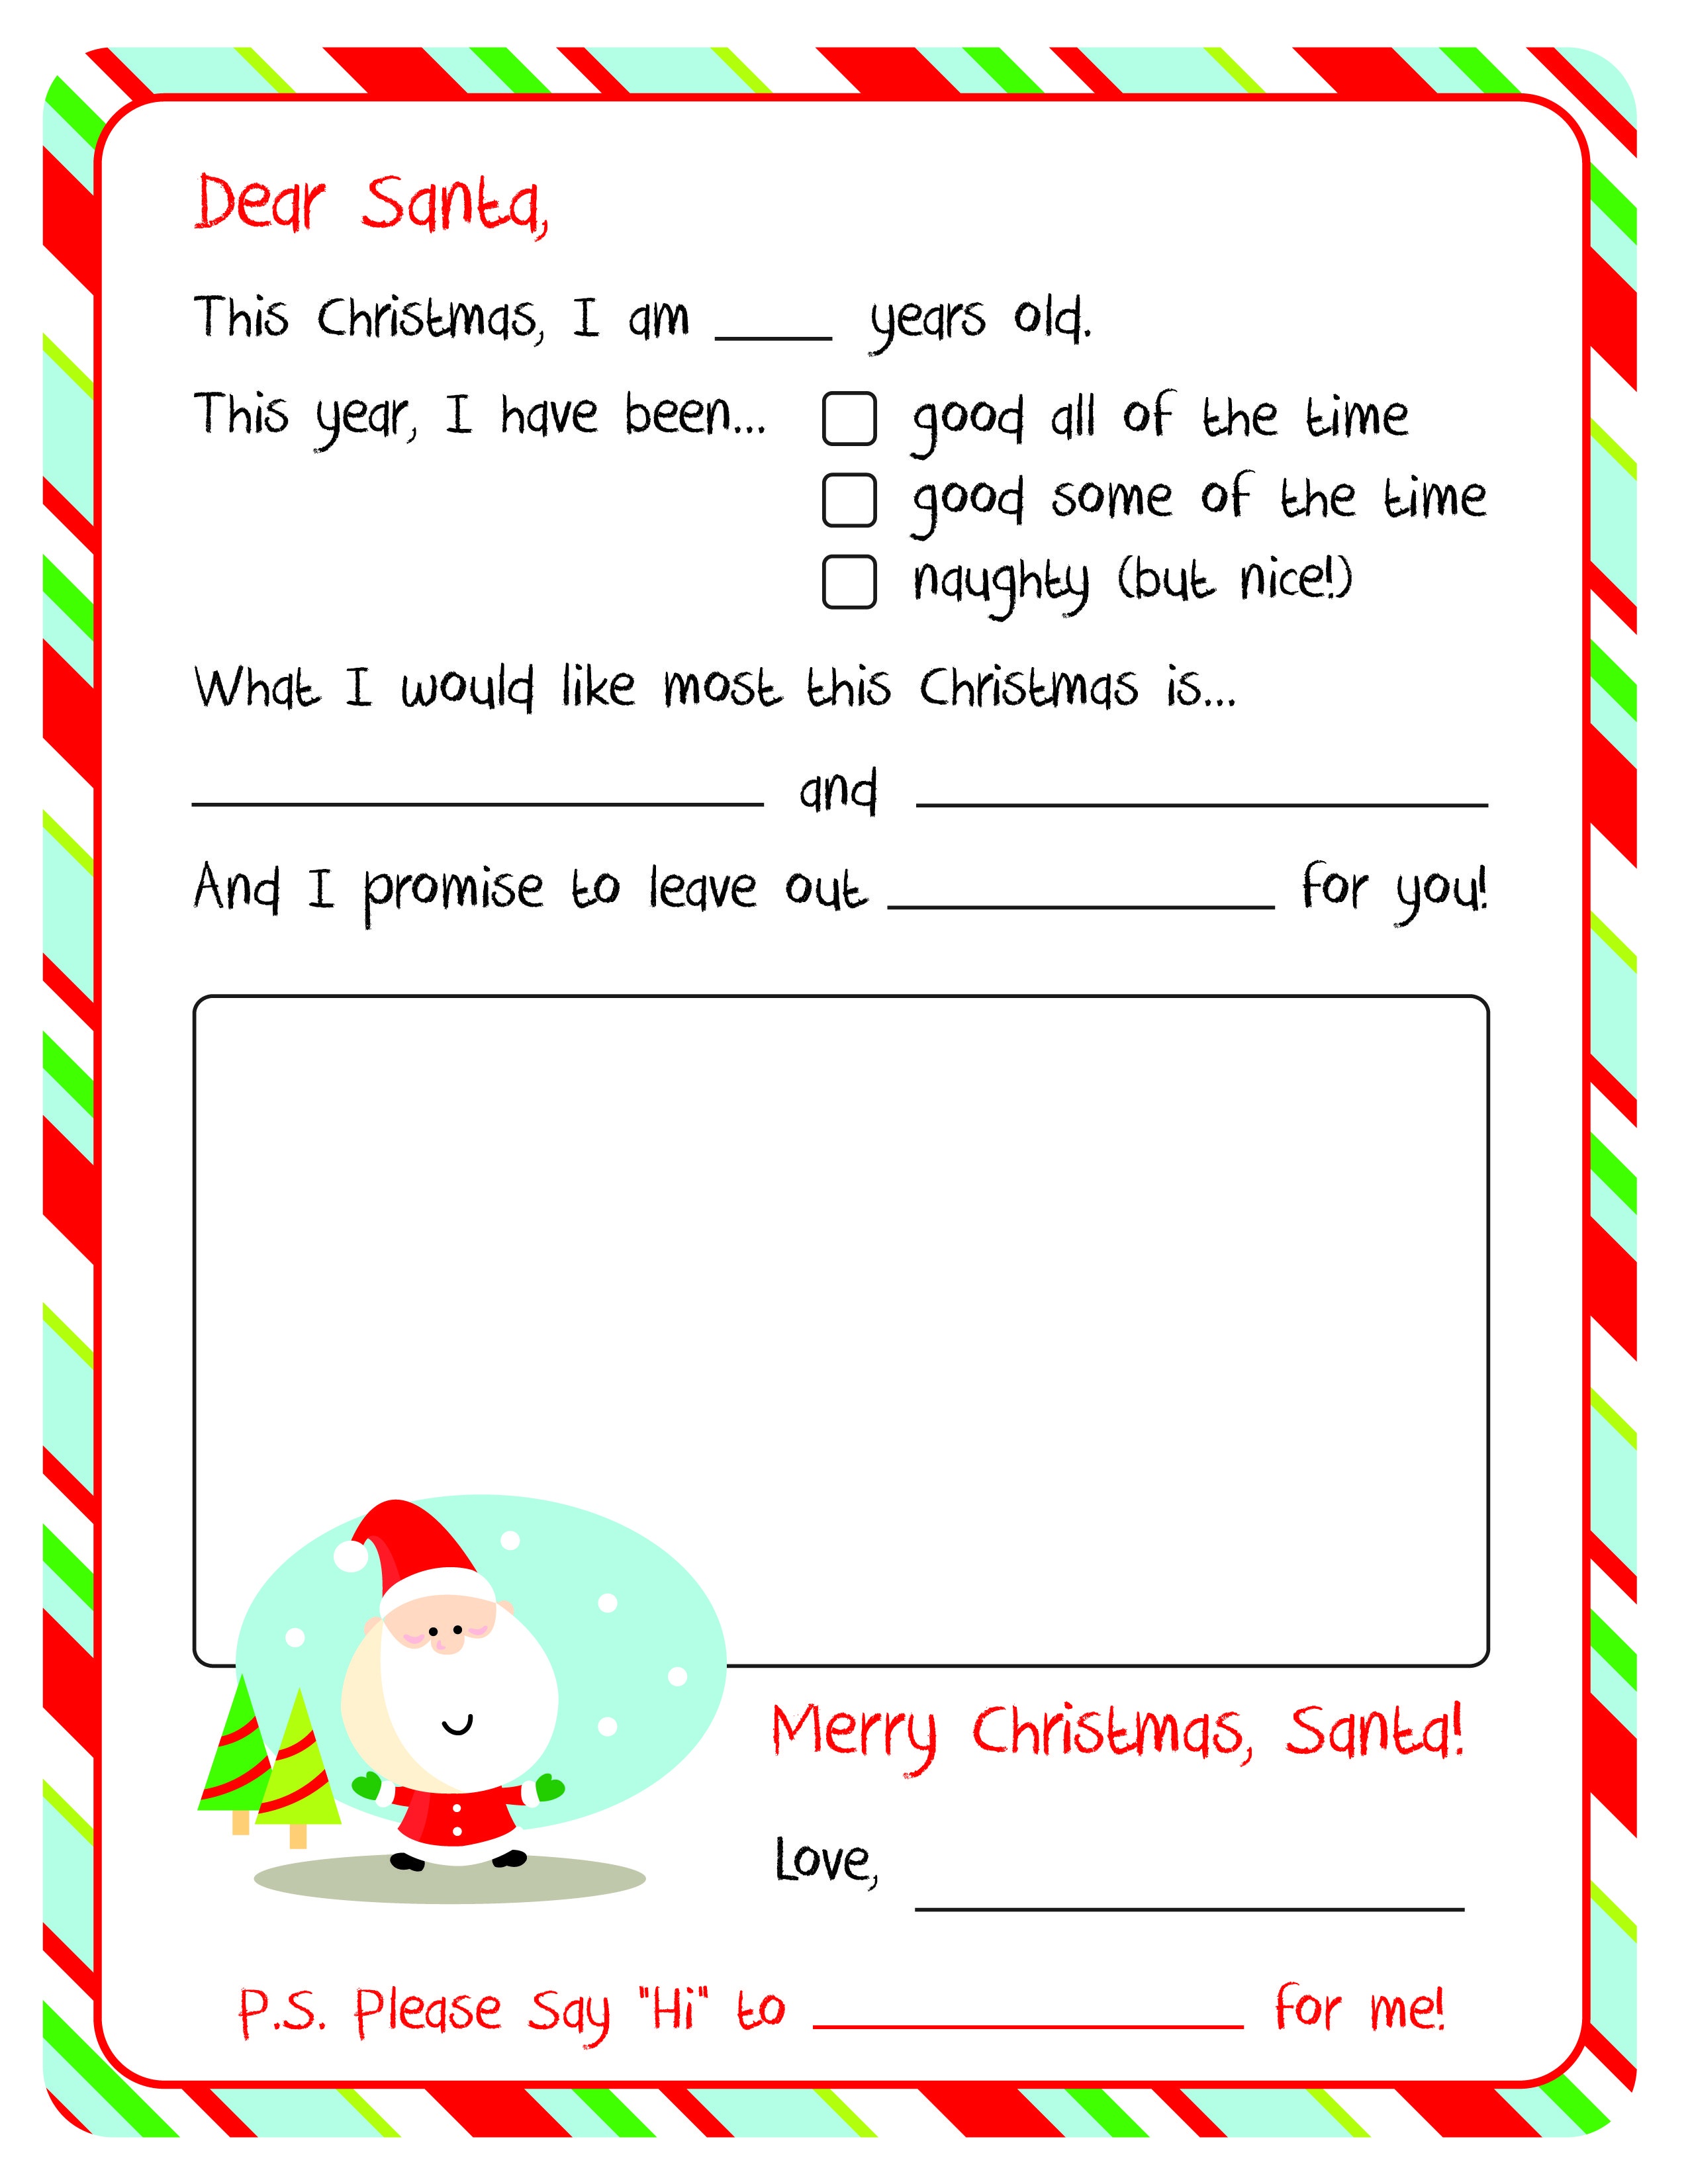 Letter To Santa – Free Printable | Christmas Ideas | Santa Template - Letter To Santa Template Free Printable